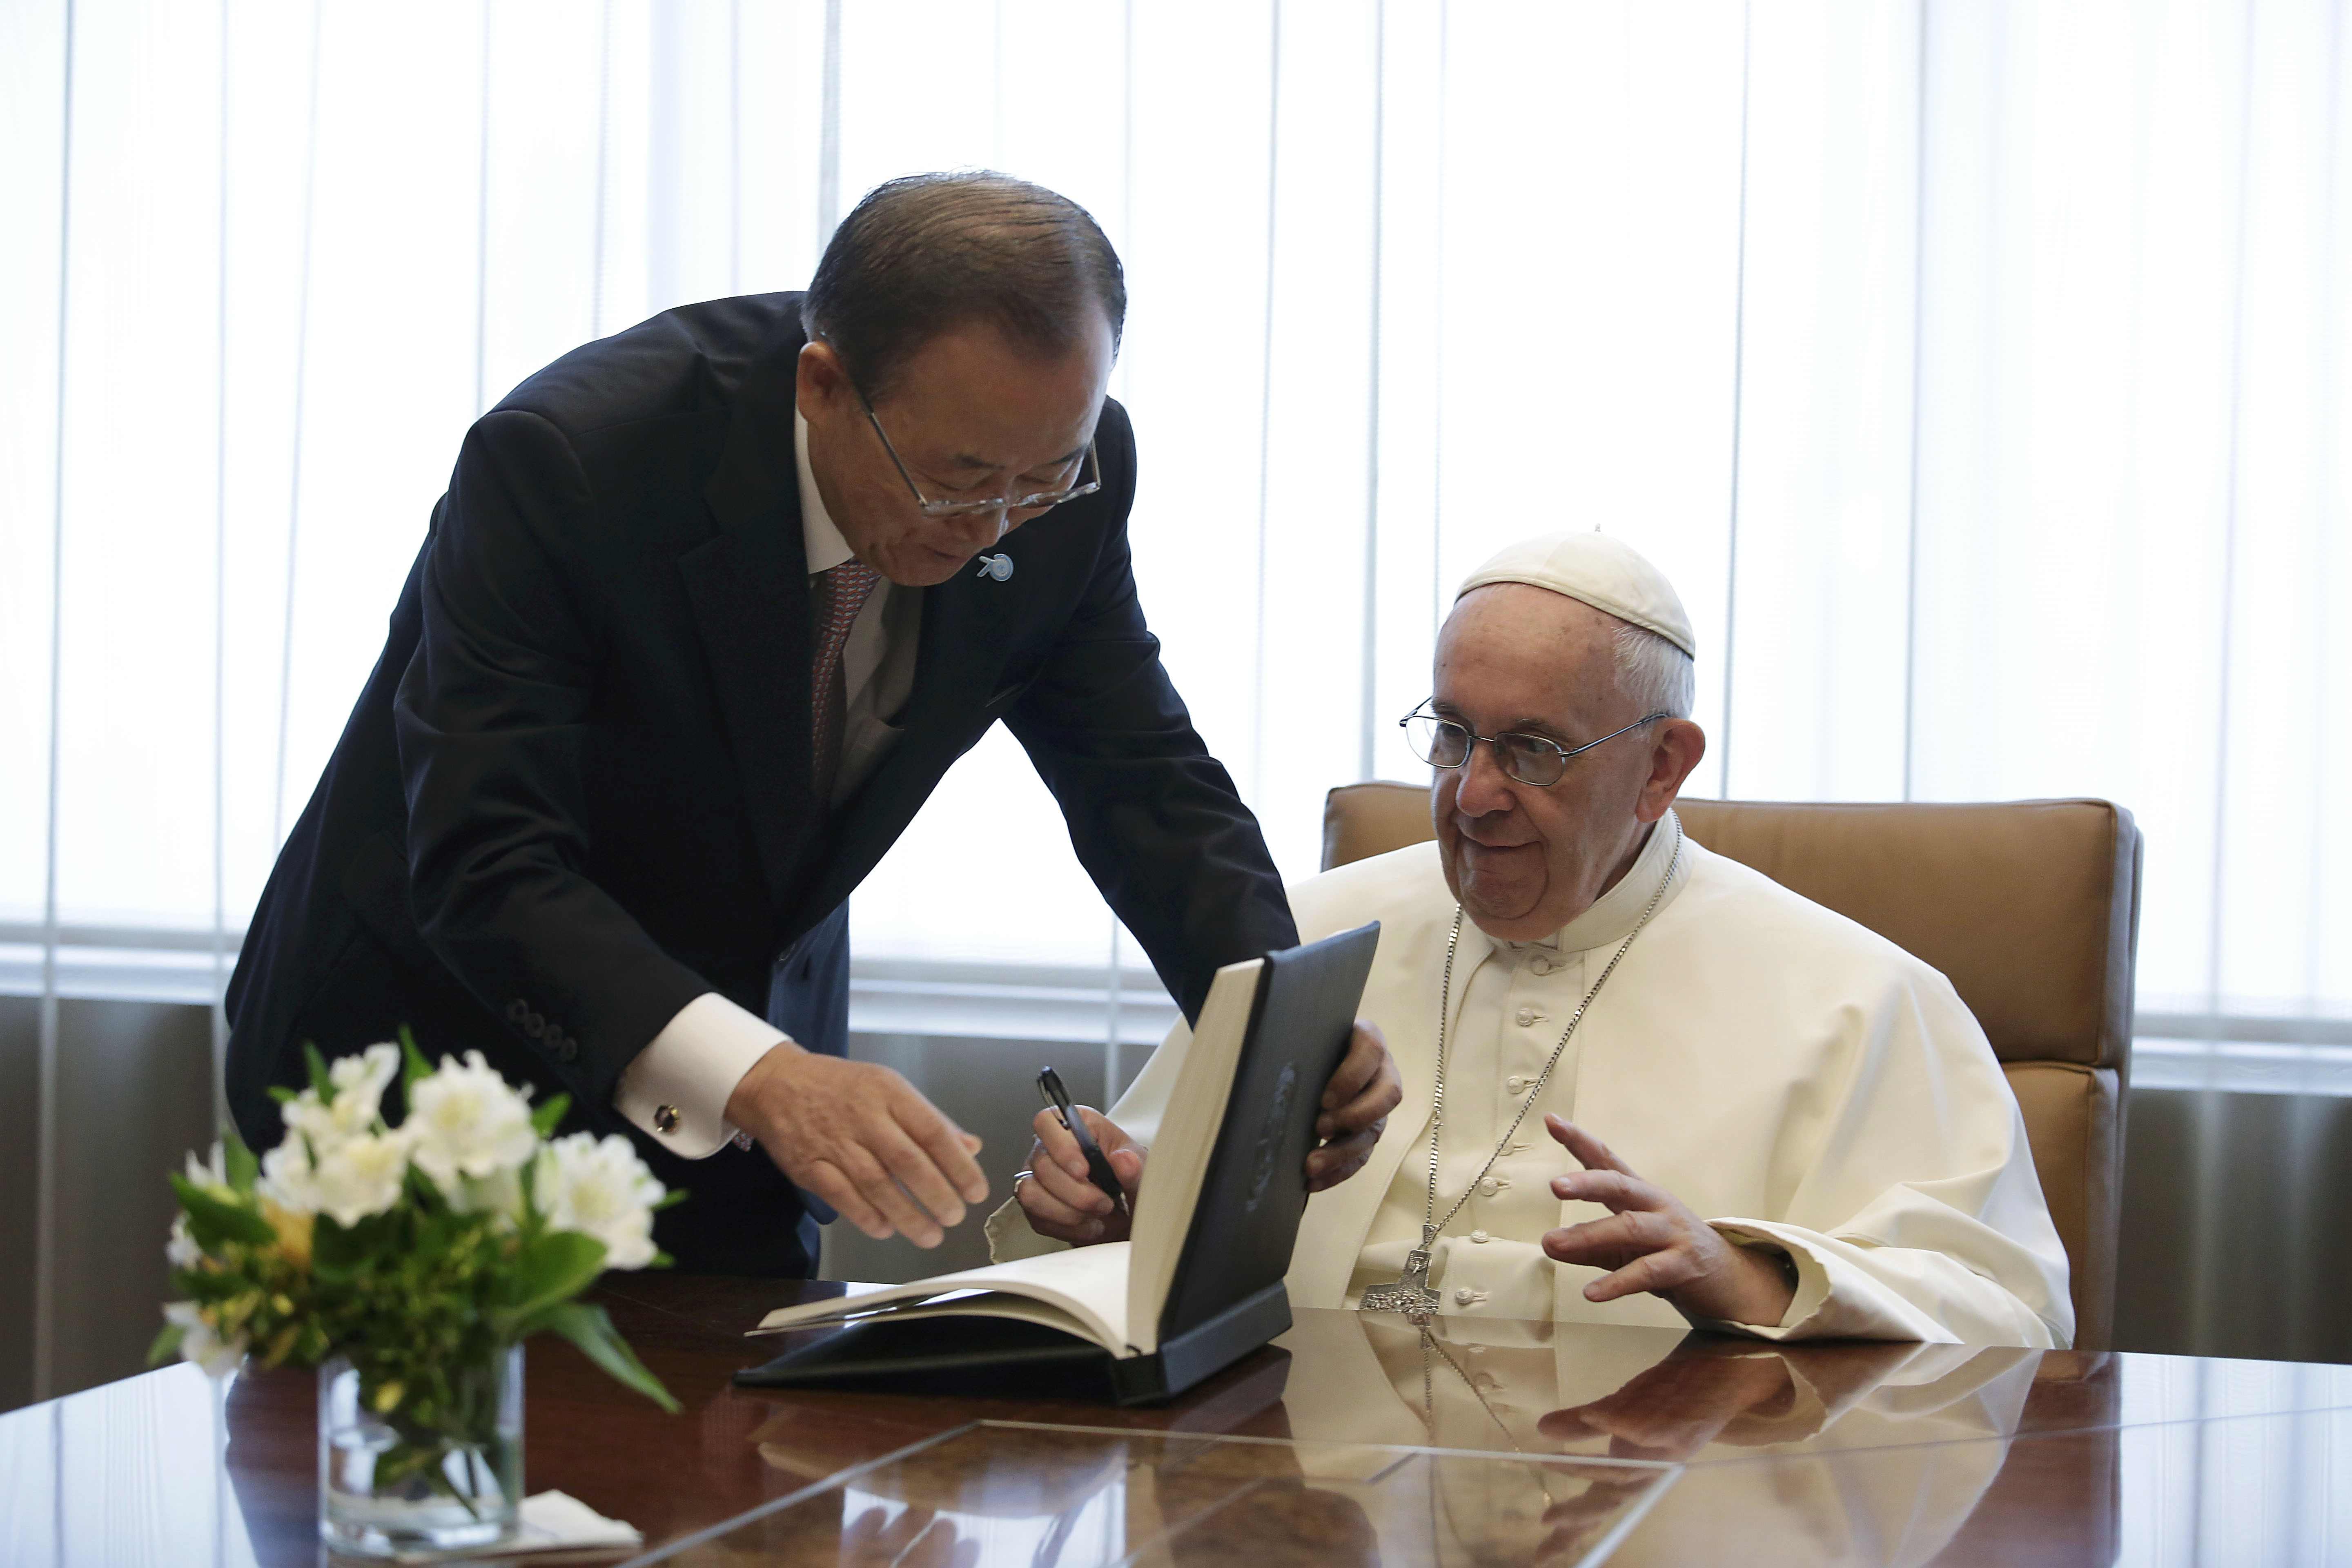 El Papa firmó el libro de visitantes de la ONU (Fotos)